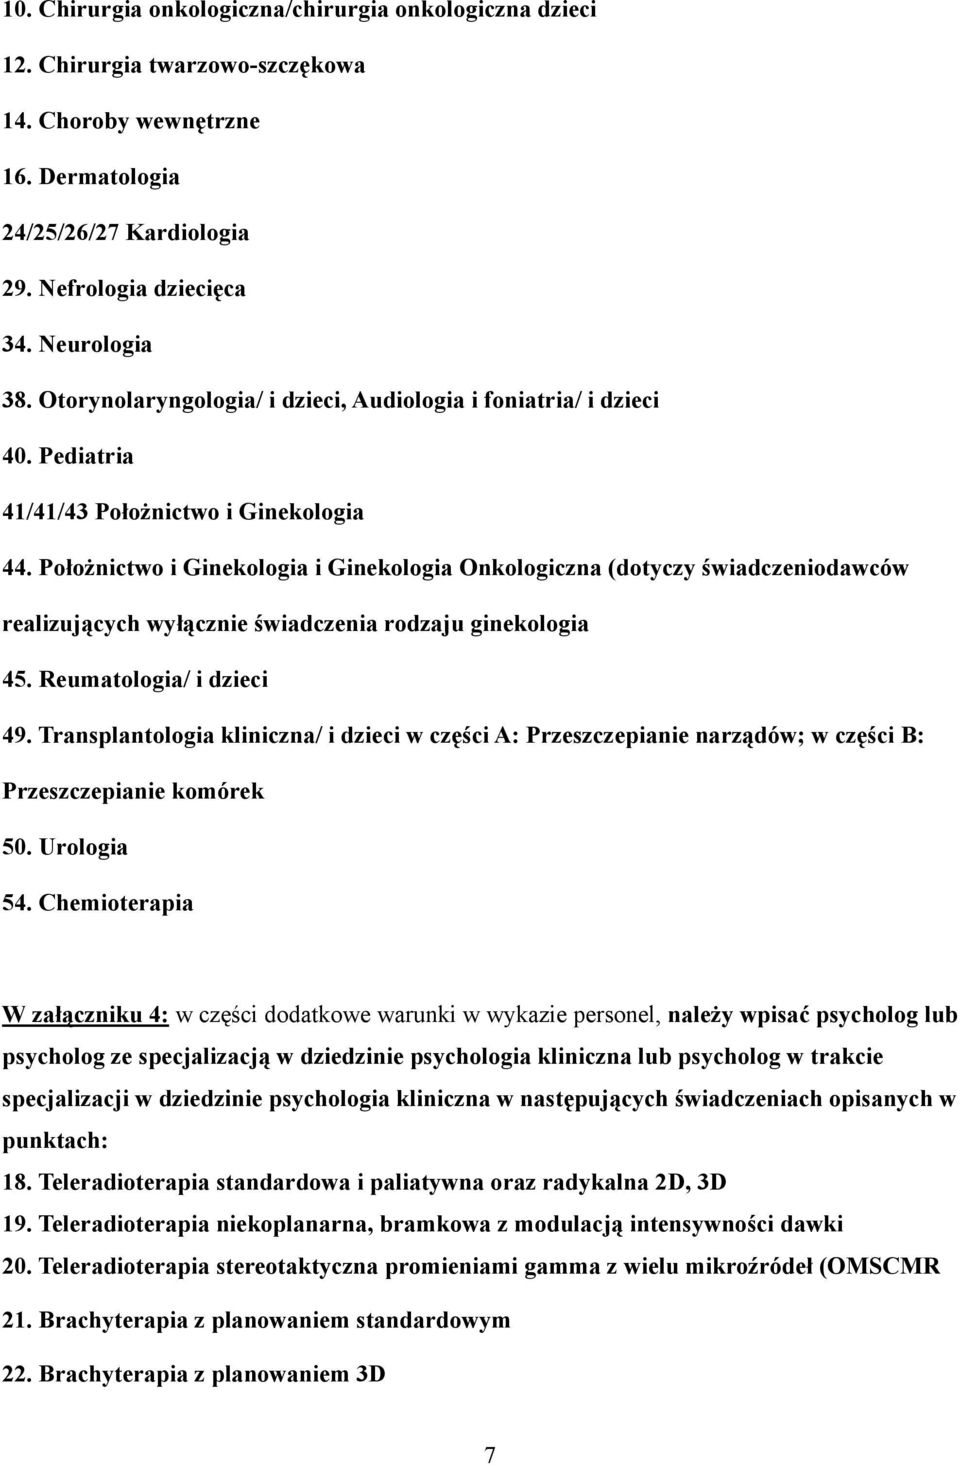 Położnictwo i Ginekologia i Ginekologia Onkologiczna (dotyczy świadczeniodawców realizujących wyłącznie świadczenia rodzaju ginekologia 45. Reumatologia/ i dzieci 49.